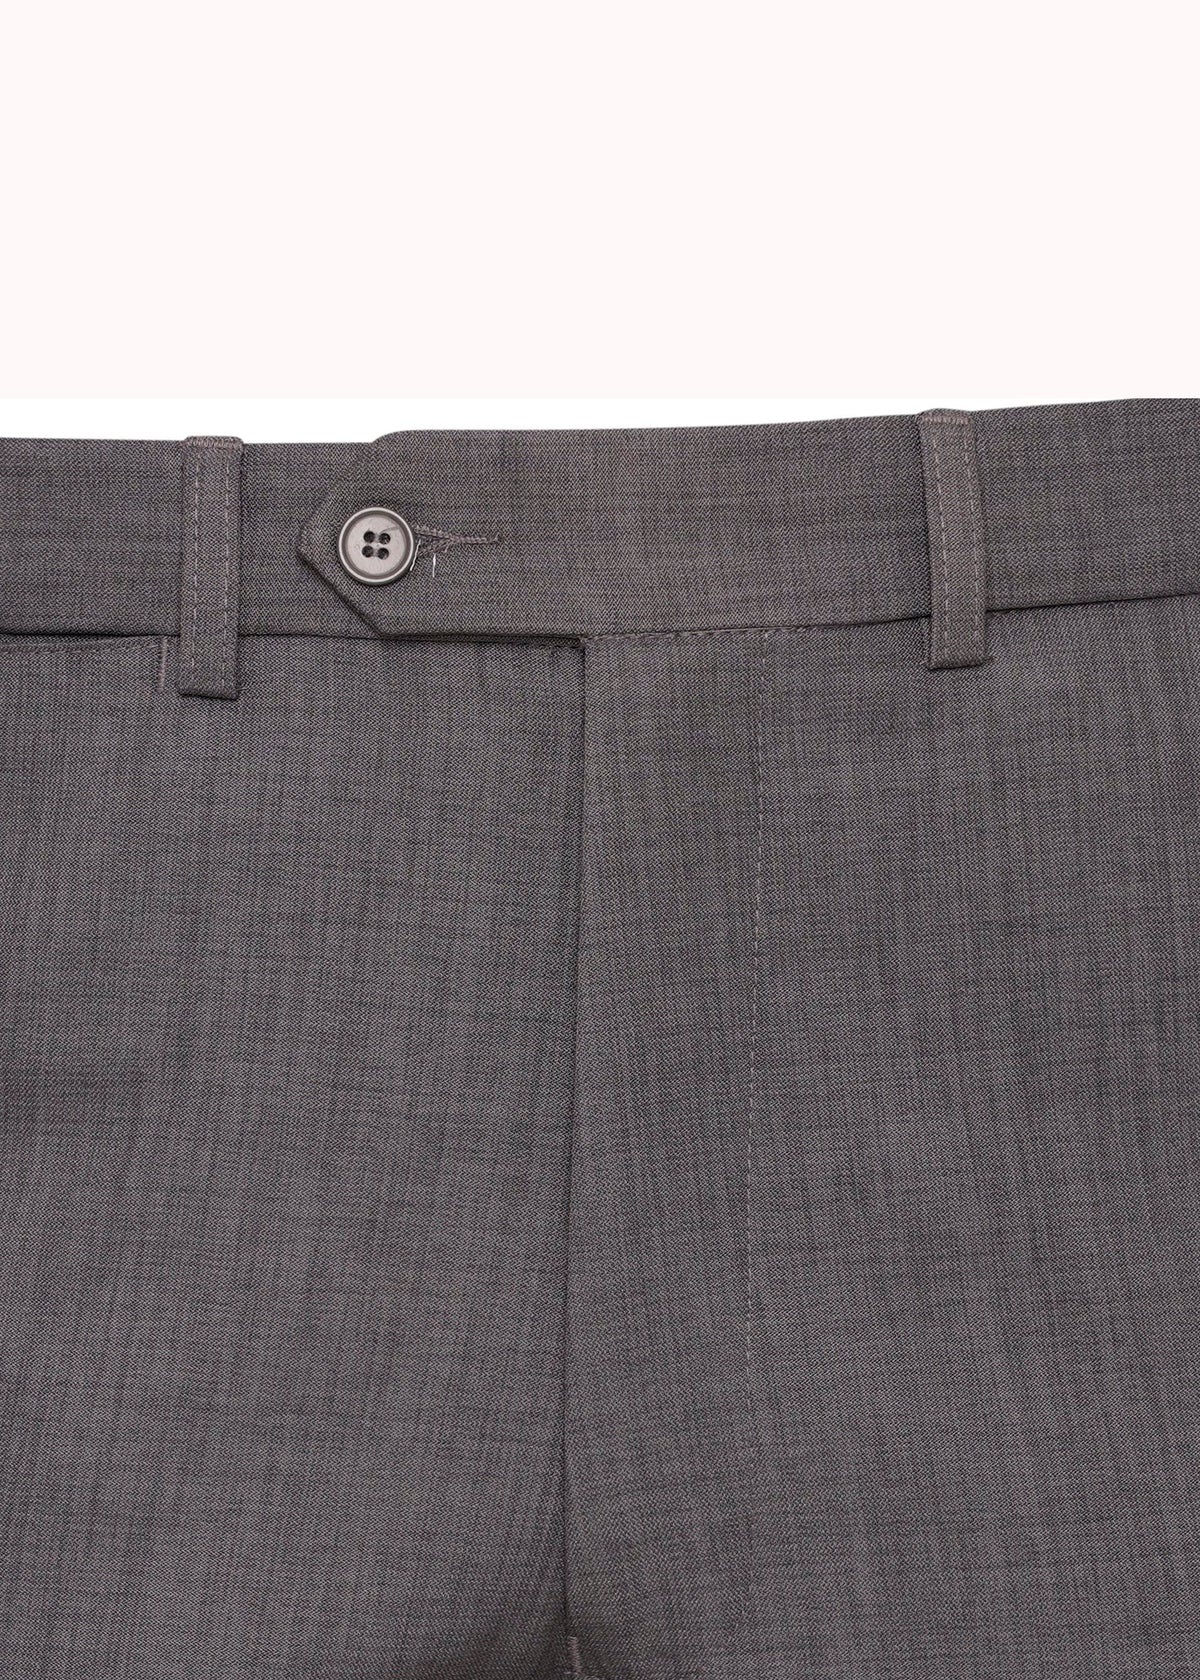 Buy Grey Trousers Mens & Trouser Pants For Men - Apella